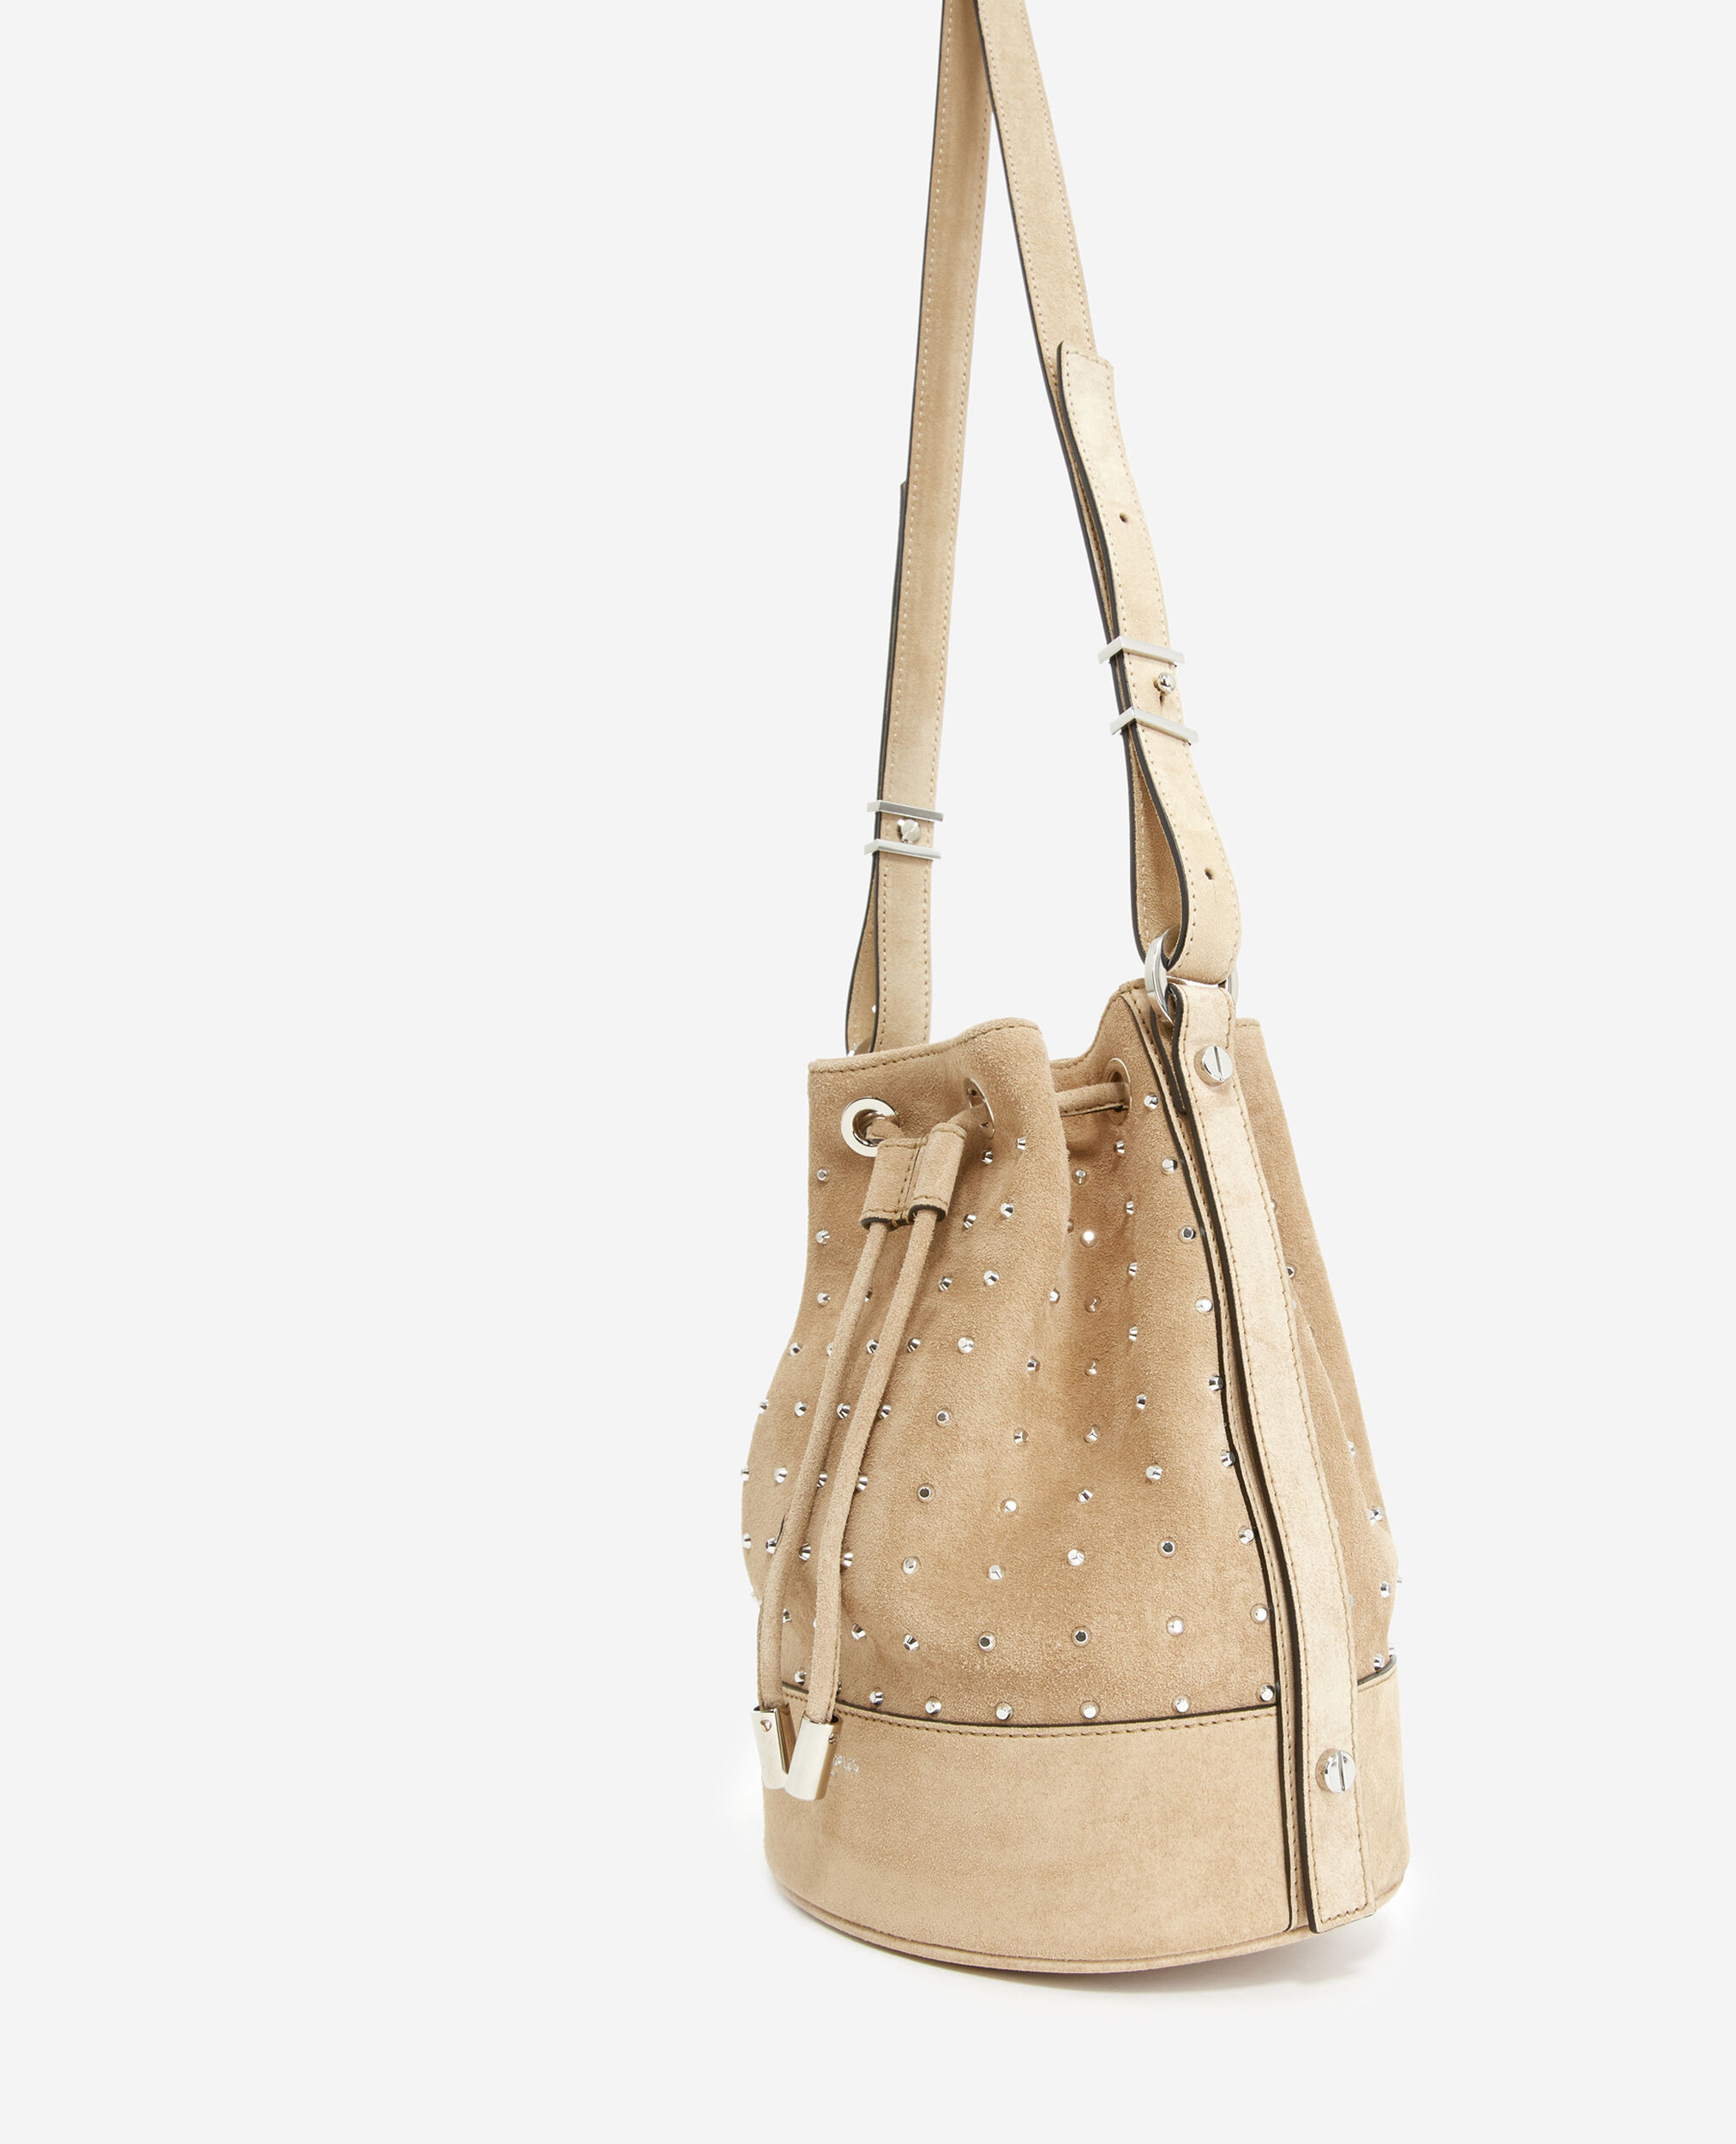 Studded Medium Tina bag in beige suede, BEIGE, hi-res image number null